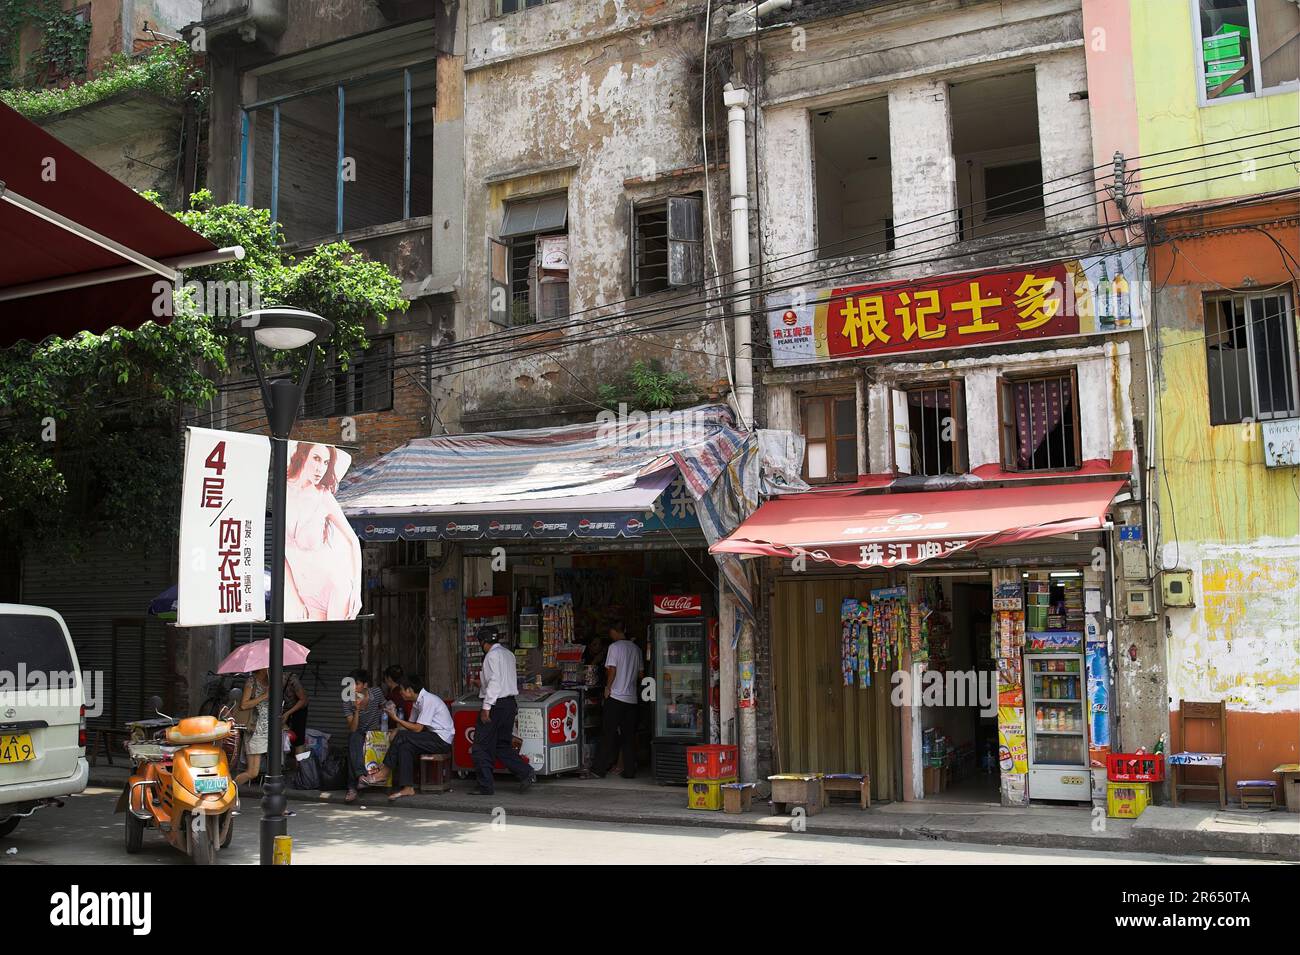 广州市 中國 Guangzhou, China; Old dingy tenement houses - a small dirty shop; Alte, schmuddelige Mietshäuser – ein kleiner, dreckiger Laden Stock Photo